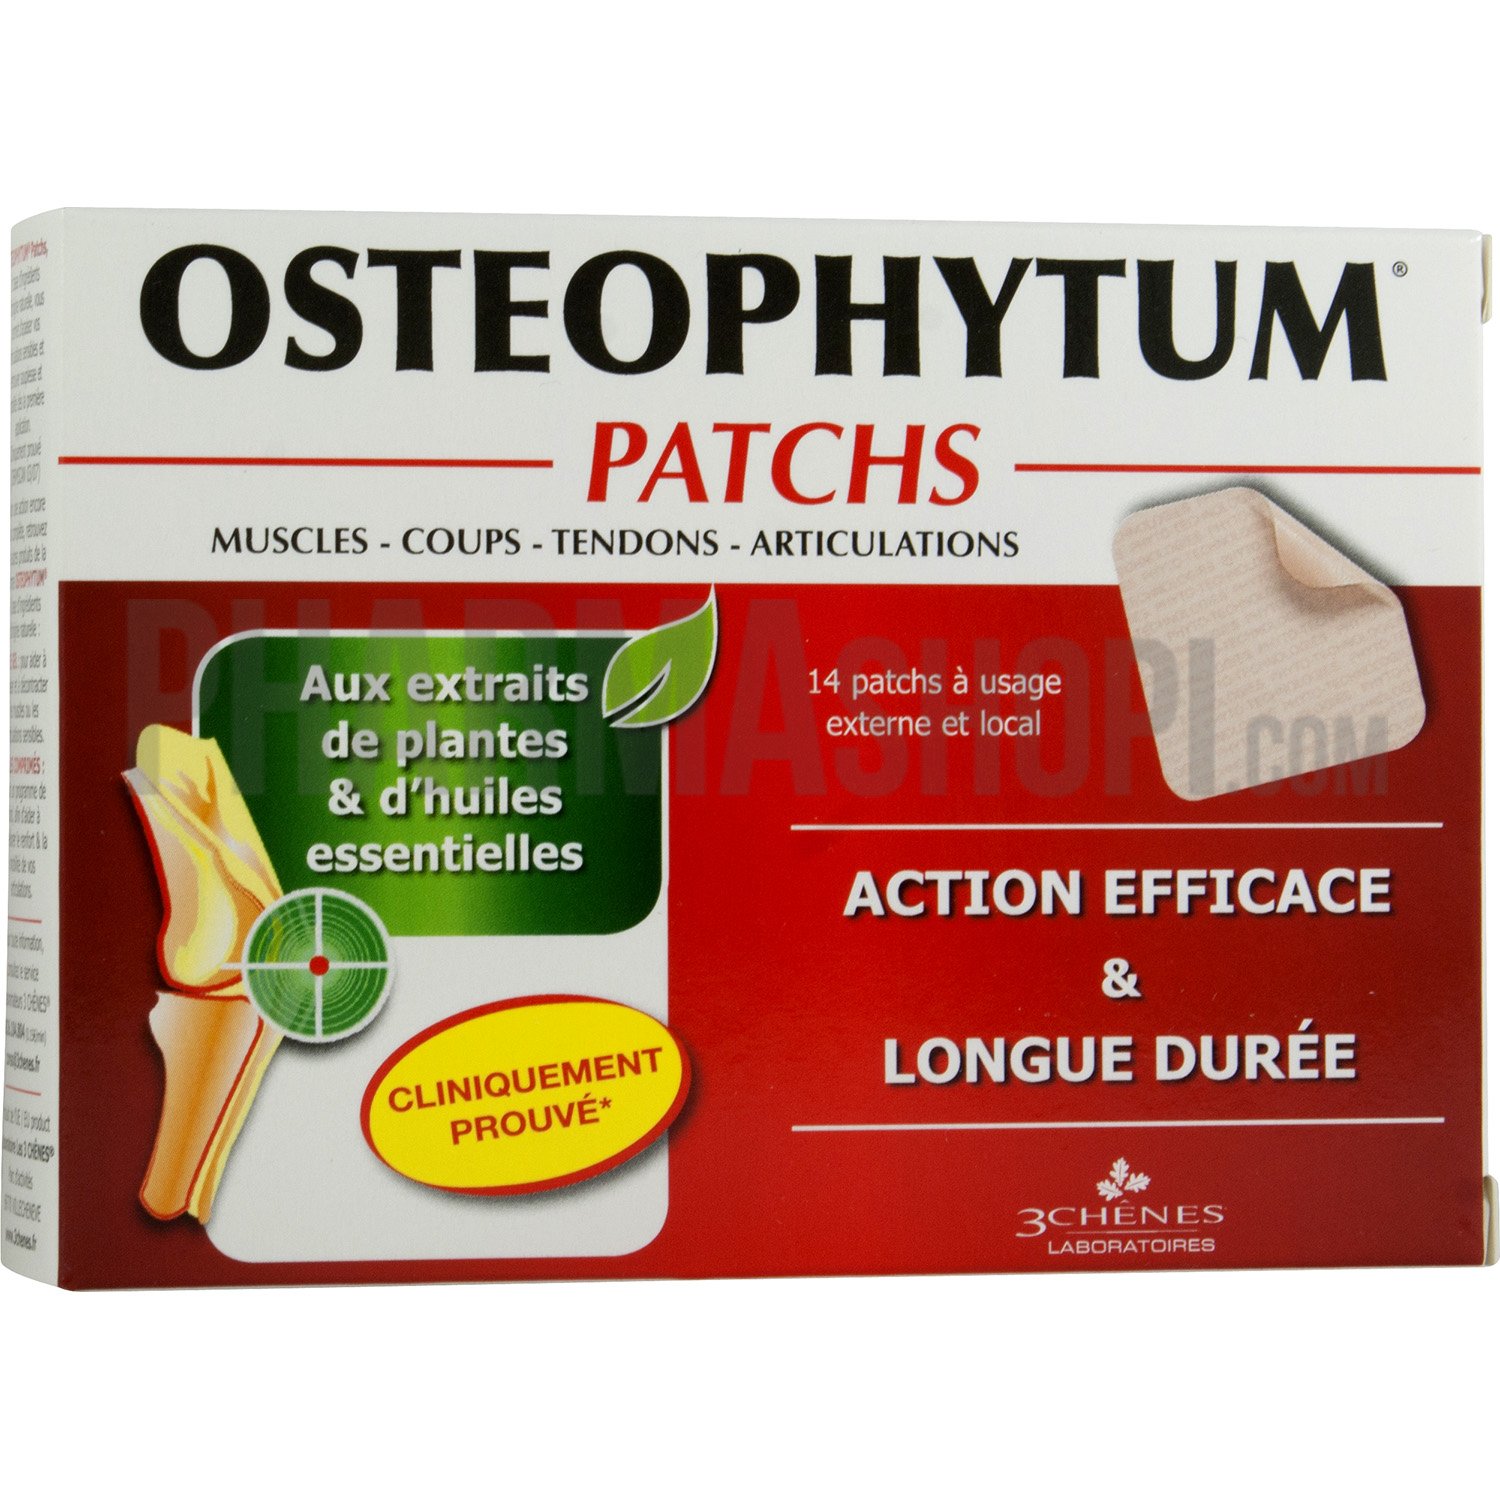 Osteophytum patchs 3 chènes - boite de 14 patchs